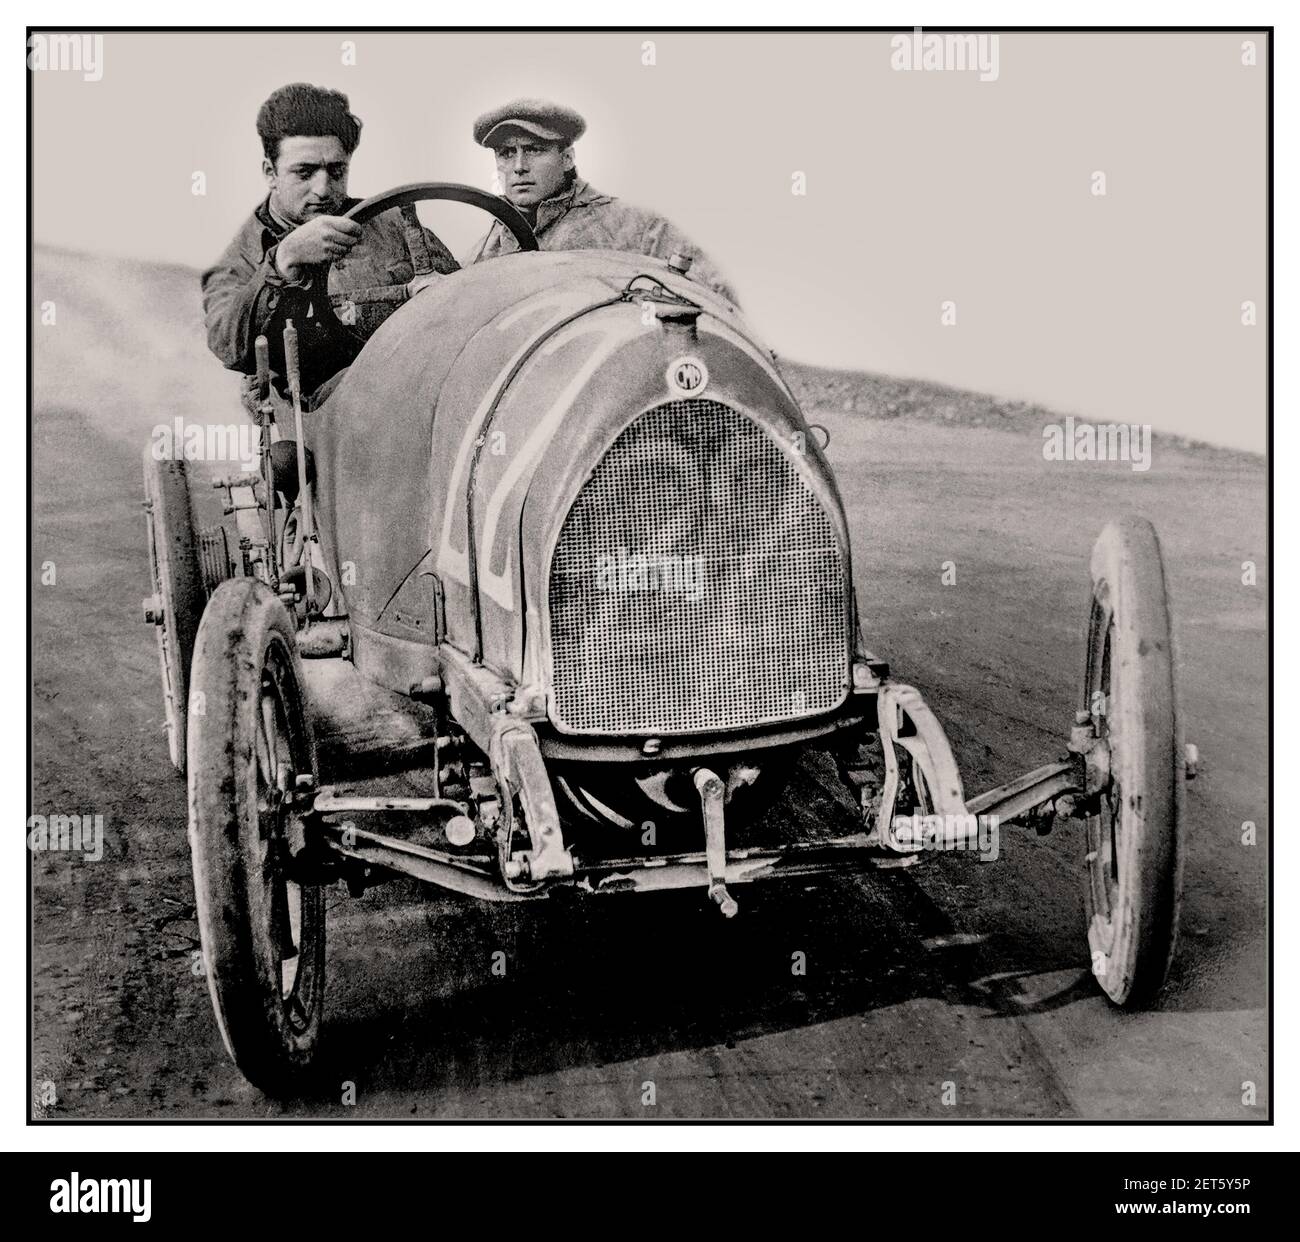 ENZO FERRARI Archive Vintage 1919 image of a young Enzo Ferrari in his first ever race as a professional driver in No.22 C.M.N. (Costruzioni Meccaniche Nazionali) Parma-Poggio di Berceto hillclimb race 1919 Stock Photo